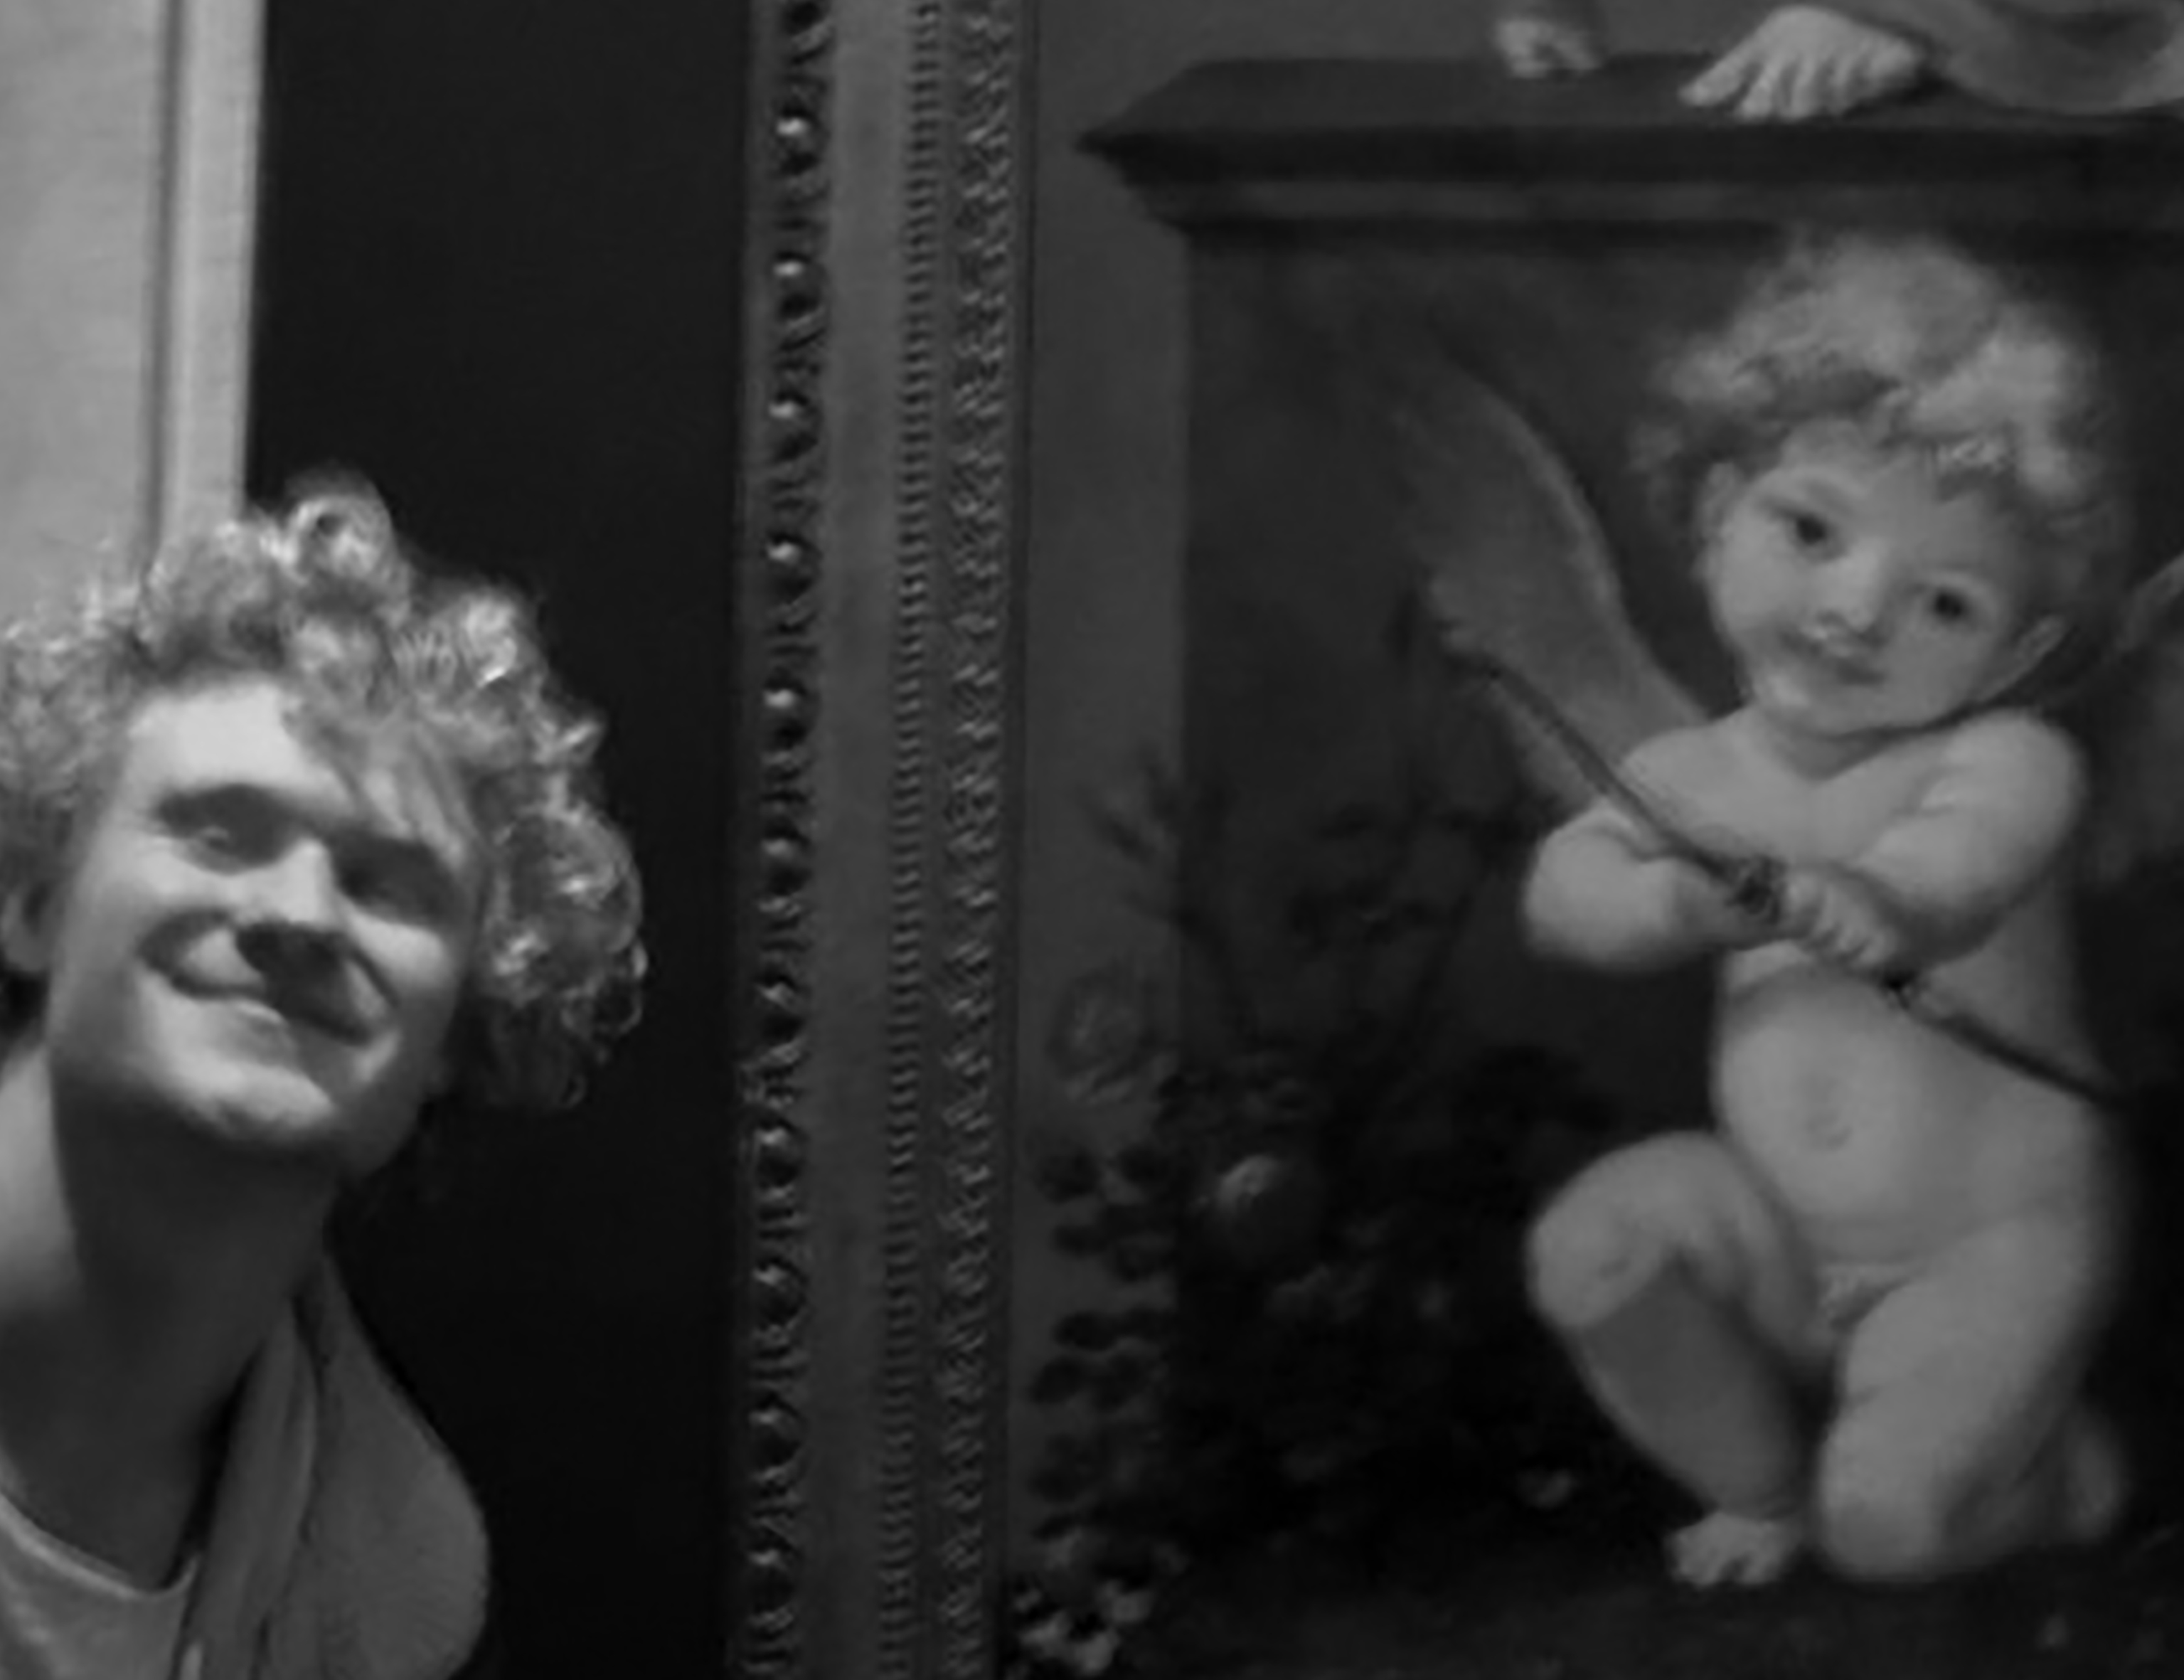 Laki-laki berambut ikal berpose di depan lukisan dewa cinta berambut ikal